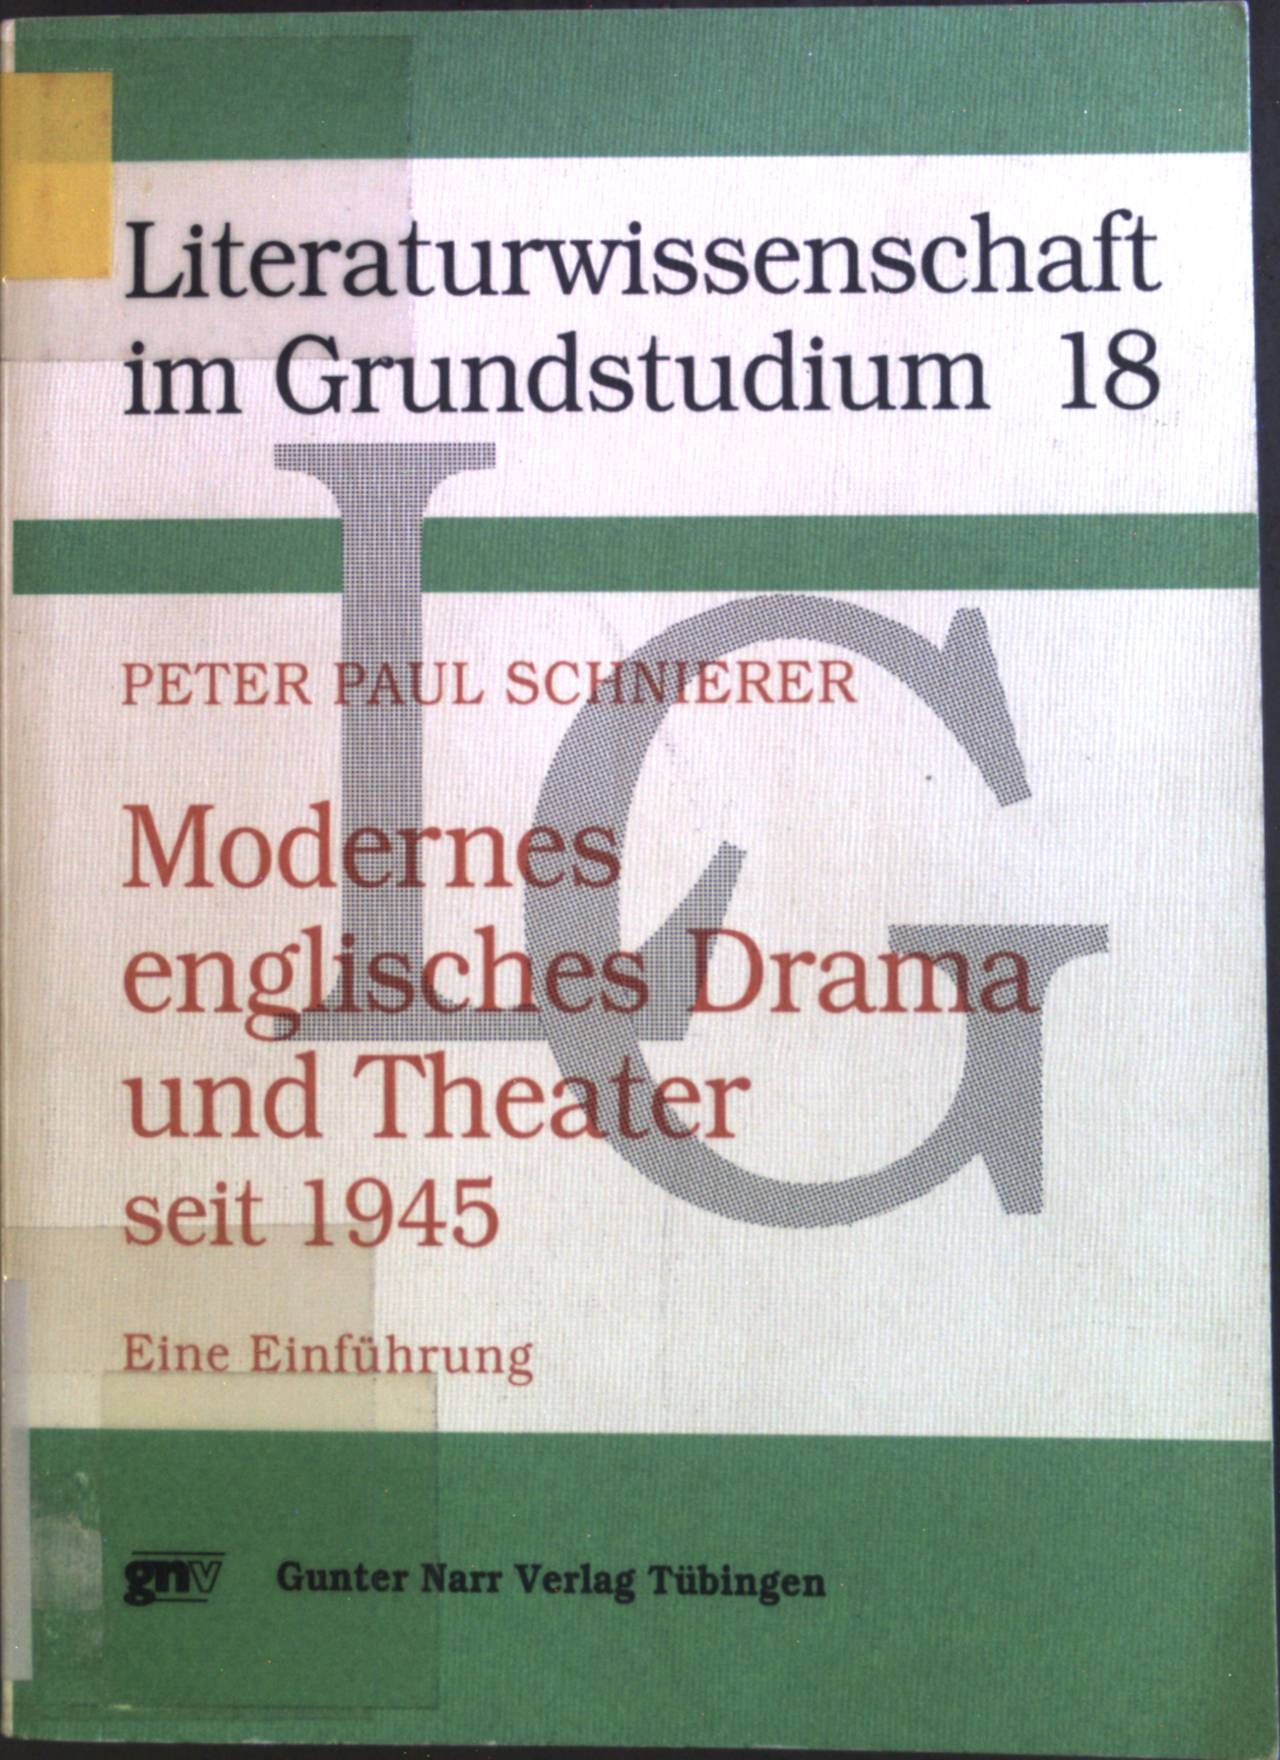 Modernes englisches Drama und Theater seit 1945 : eine Einführung. Literaturwissenschaft im Grundstudium ; Bd. 18 - Schnierer, Peter Paul